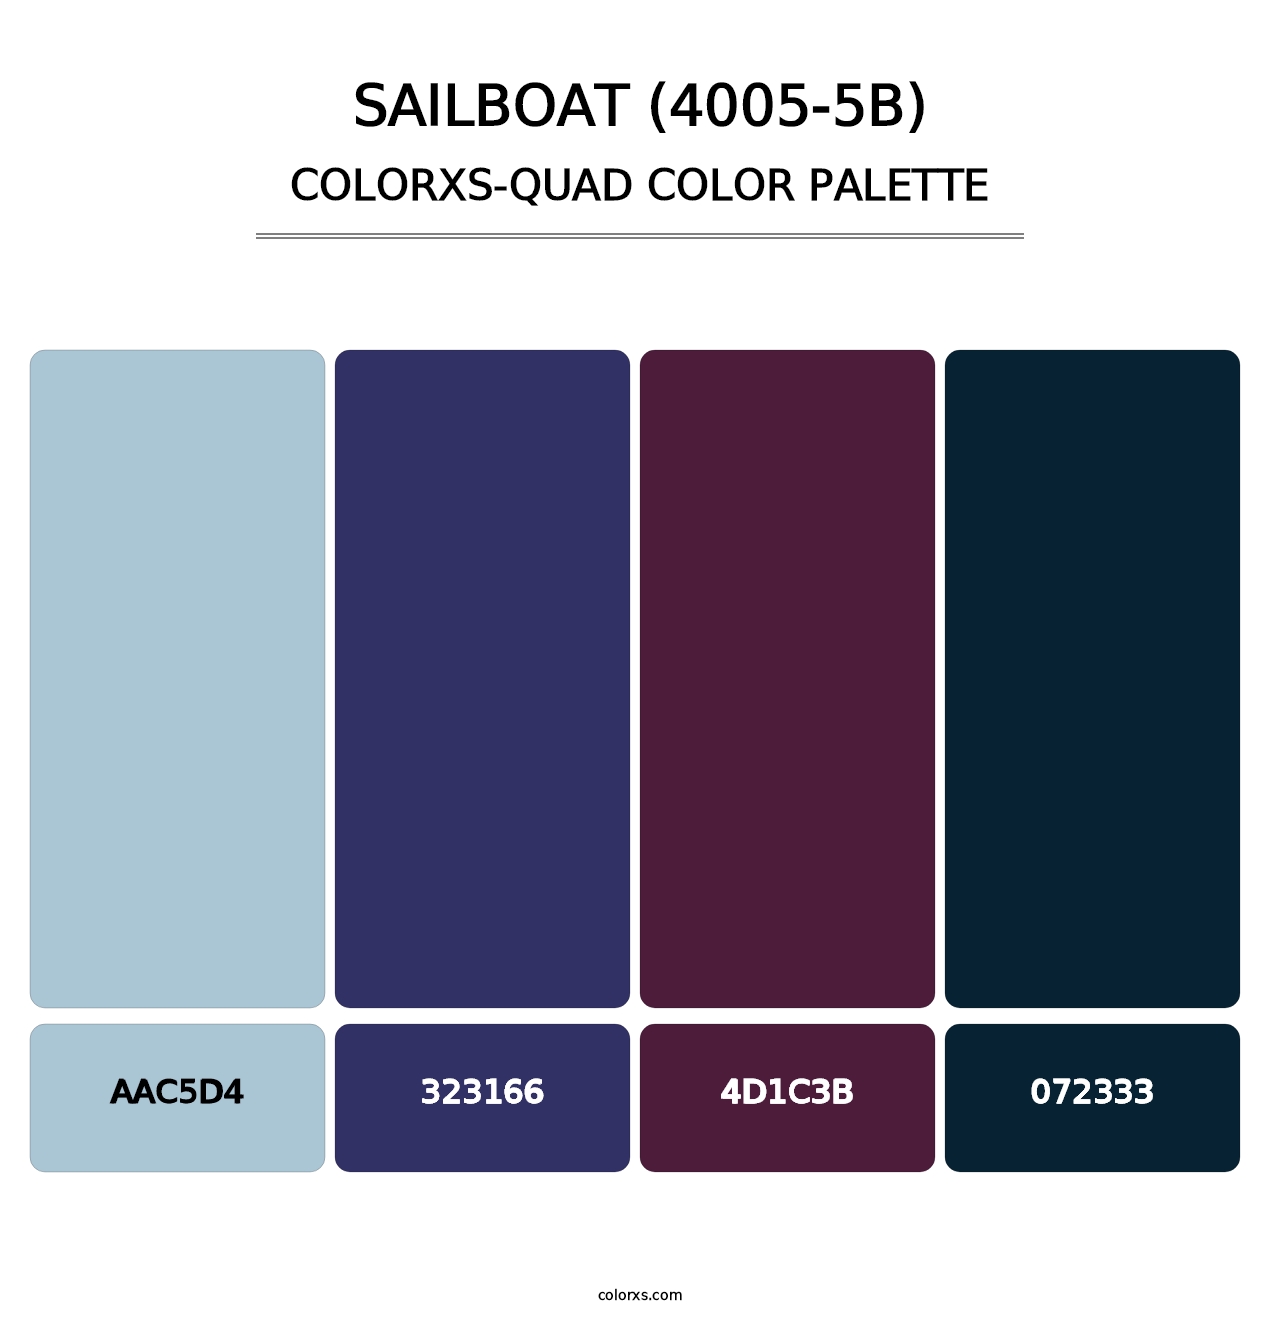 Sailboat (4005-5B) - Colorxs Quad Palette